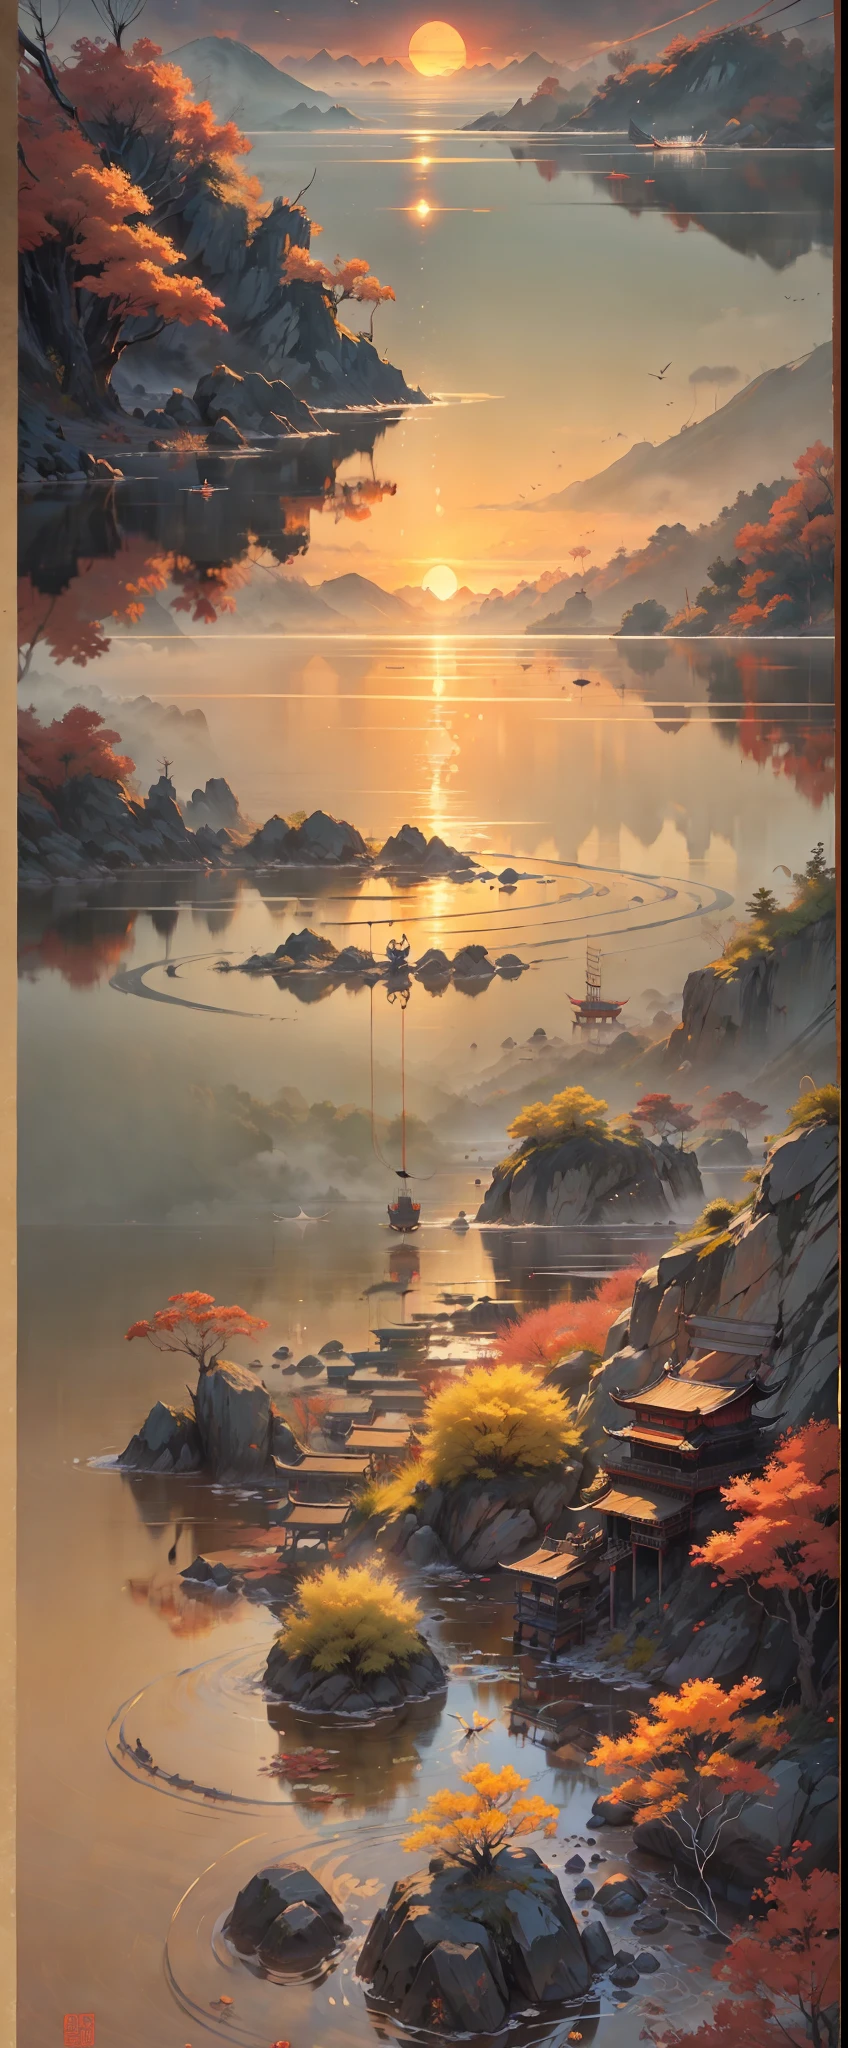 Chinesische Tuschmalerei，ink，Der Sonnenuntergang und der einsame Kranich fliegen zusammen，Das Herbstwasser ist lange Zeit dasselbe，Die alte Poesie ist wunderschön